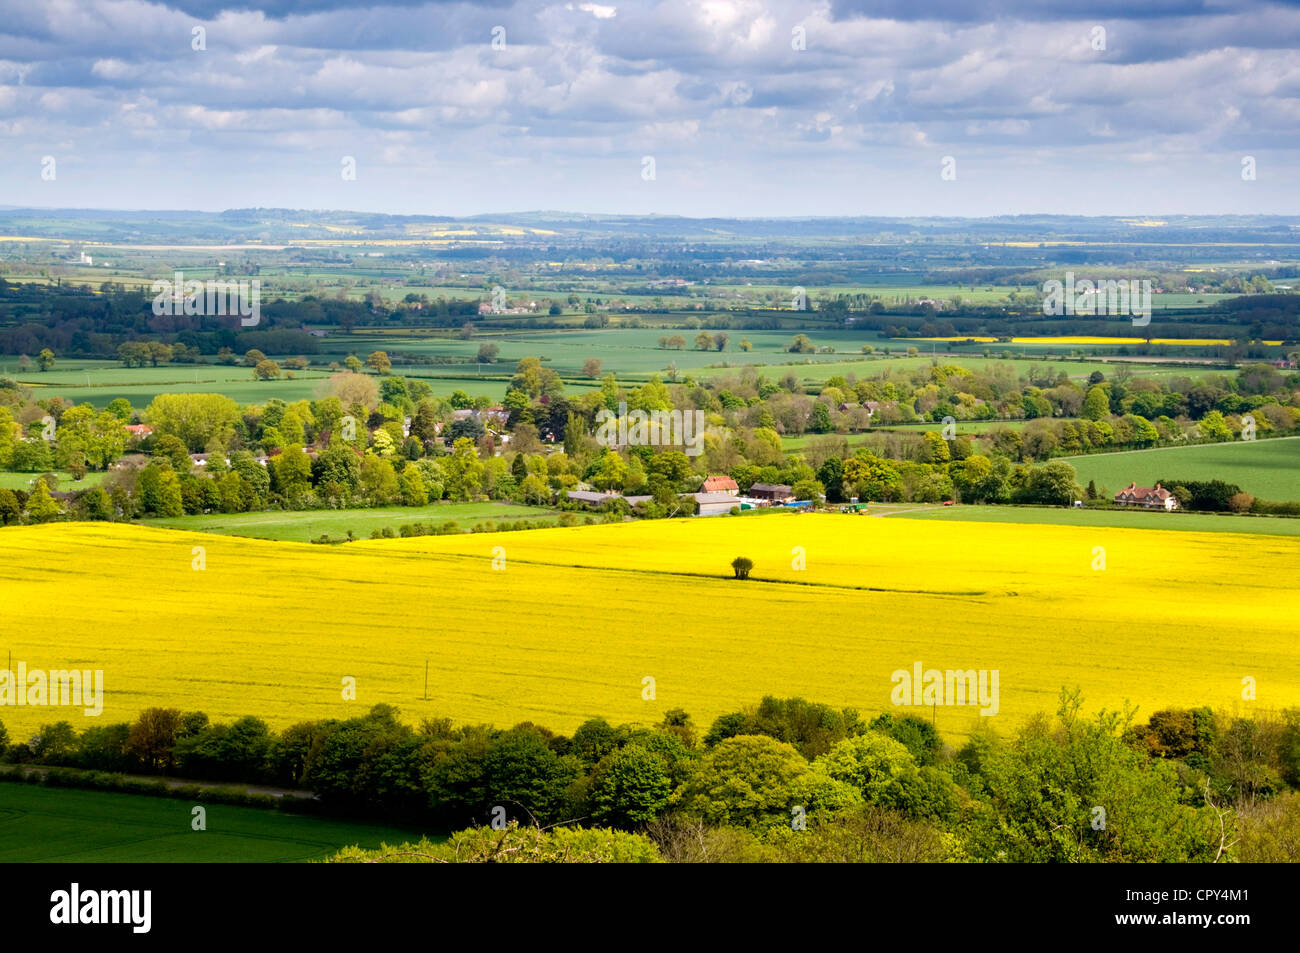 Bucks - vista Aylesbury Plain fr Beacon Hill - Chilterns - colza amarillas - Woodlands - Distancia azul sol y sombra Foto de stock